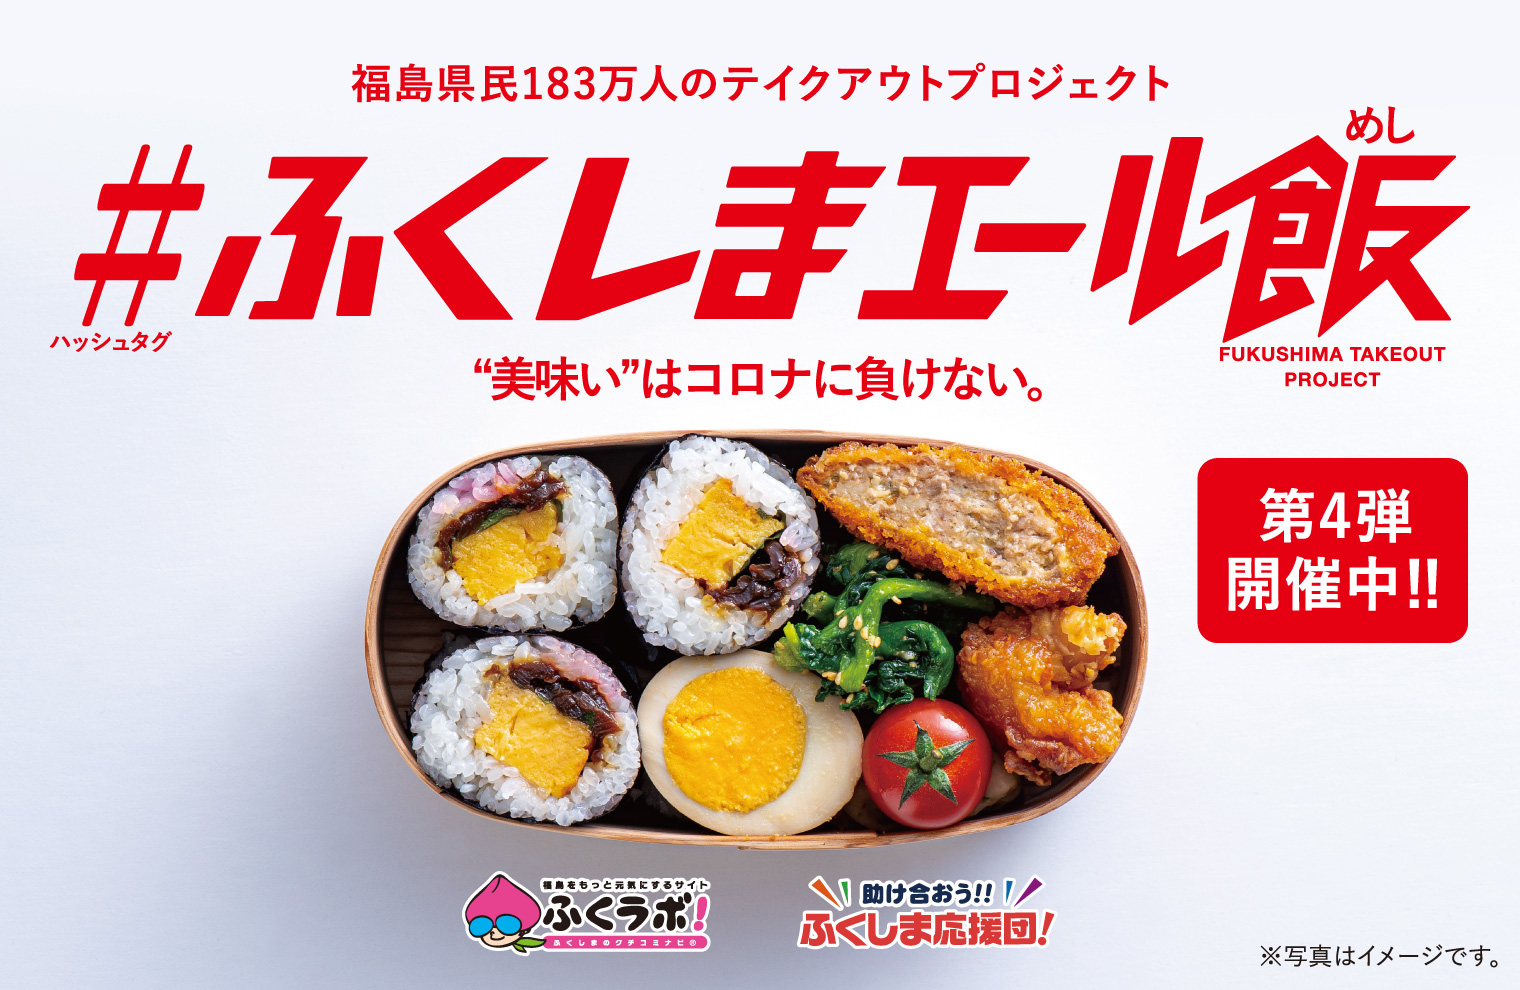 福島県民183万人のテイクアウトプロジェクト #ふくしまエール飯 美味しいはコロナに負けない。